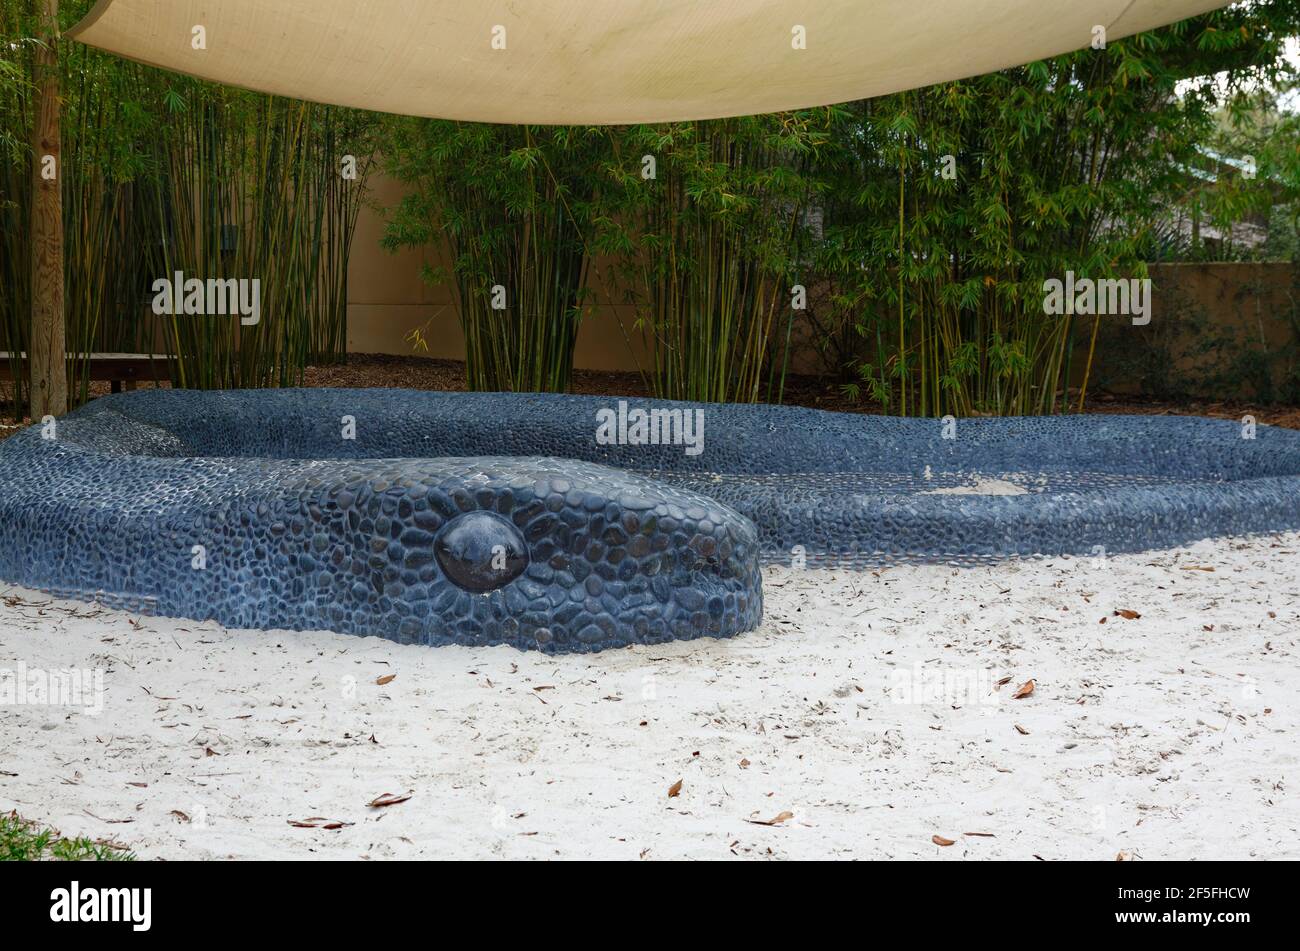 Hängematte Hollow Children's Garden, Indigo Pass, schwarzer Kieselstein Mosaik Schlange Skulptur umgibt Sandkreis, spielen, Entdeckung-basierte Lernen, Spaß, einzigartig Stockfoto